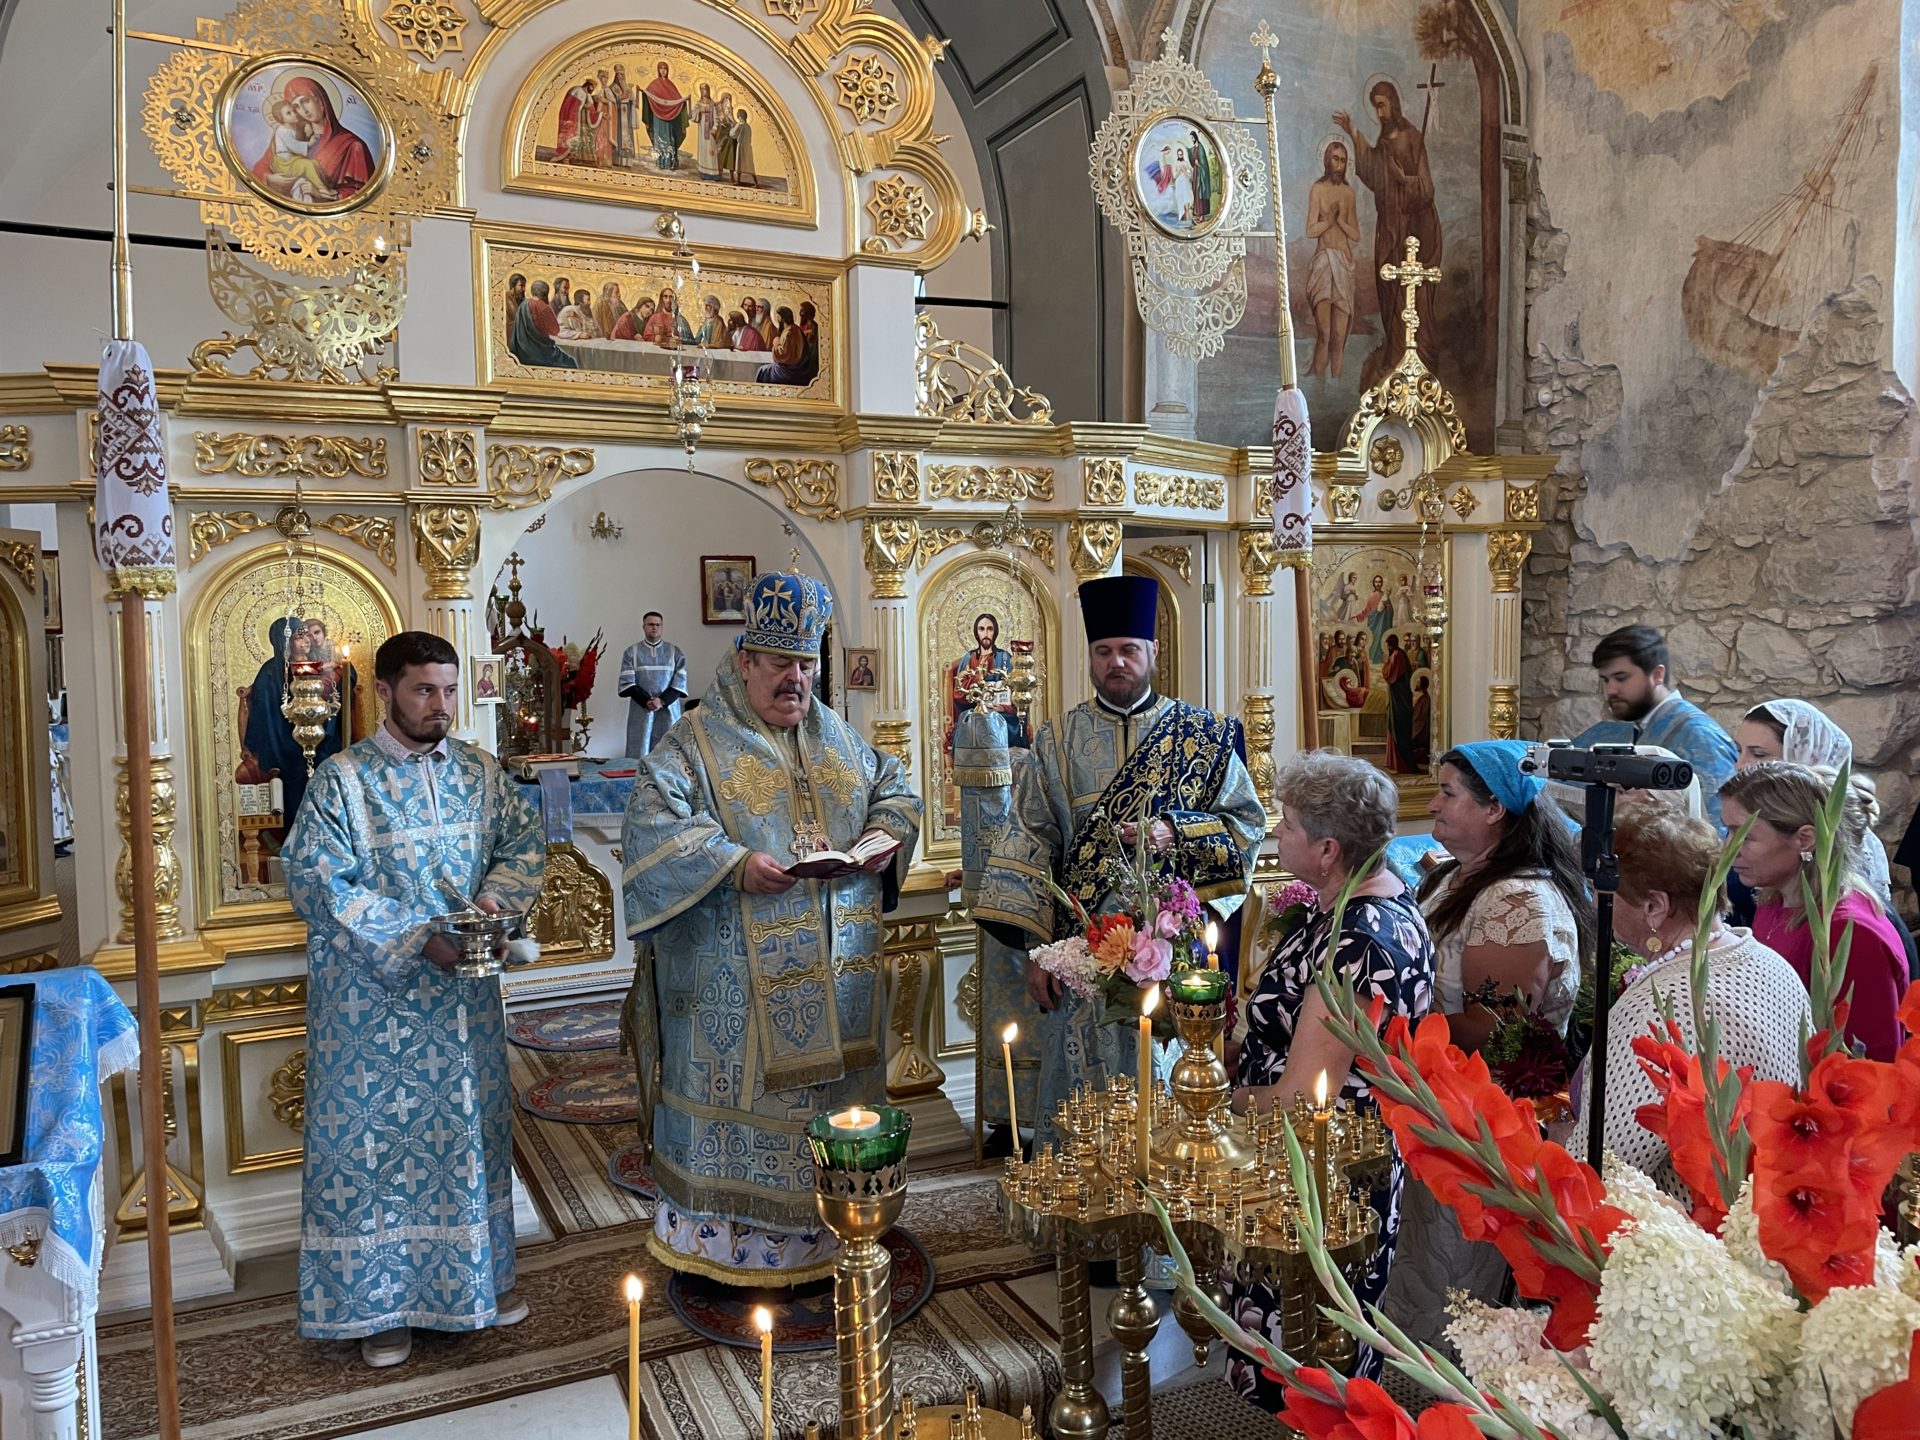 Modlitewne Uroczystości W Szczebrzeszynie Radio Orthodoxia 1027fm 7085